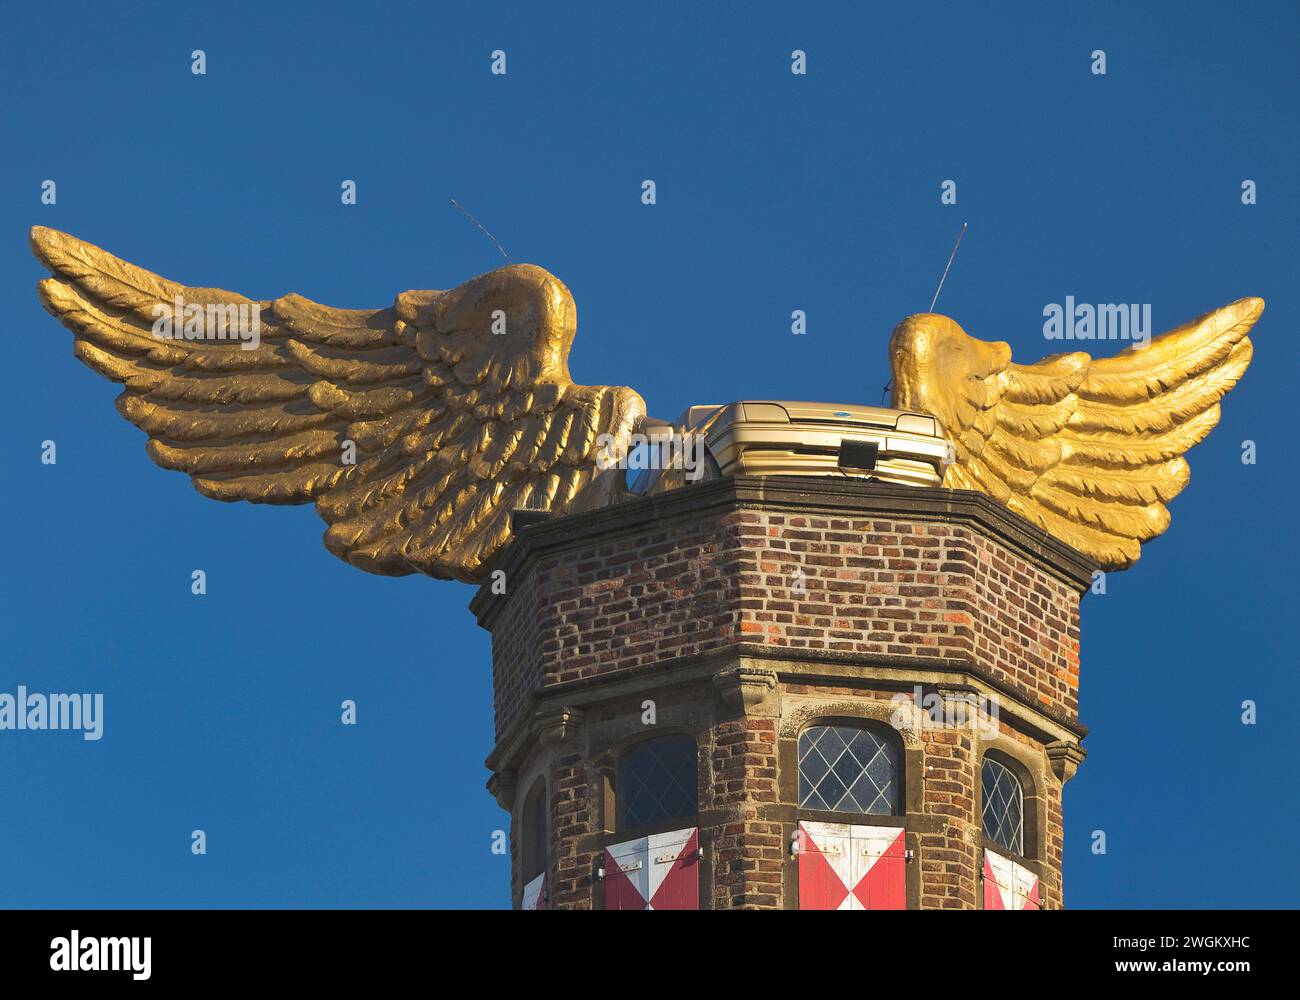 L'oiseau d'Or, voiture volante sur la tour d'escalier de l'armurerie, Allemagne, Rhénanie du Nord-Westphalie, Cologne Banque D'Images